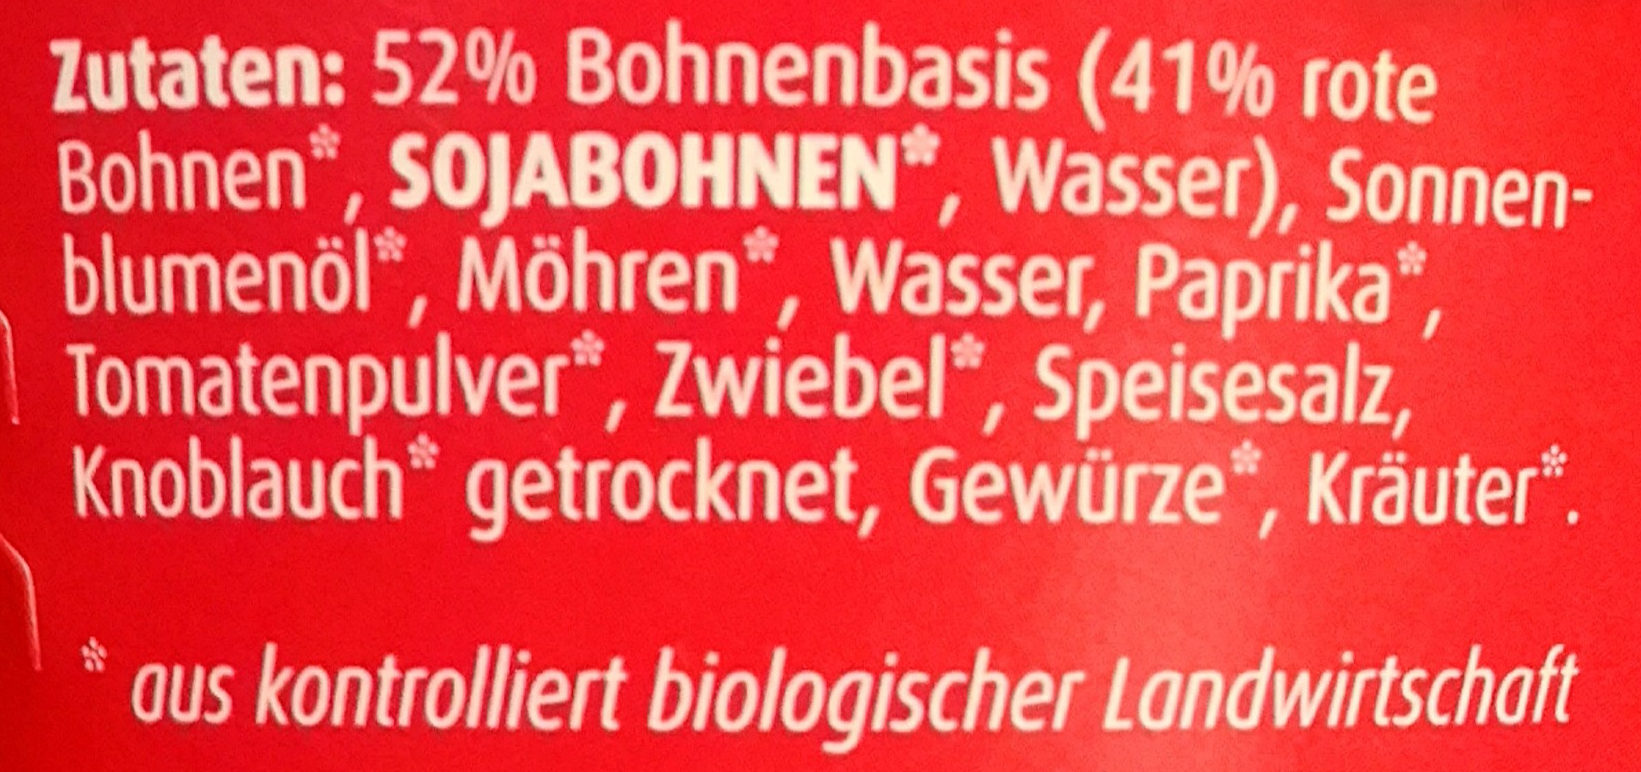 Rote Bohnen Aufstrich - Ingredients - de